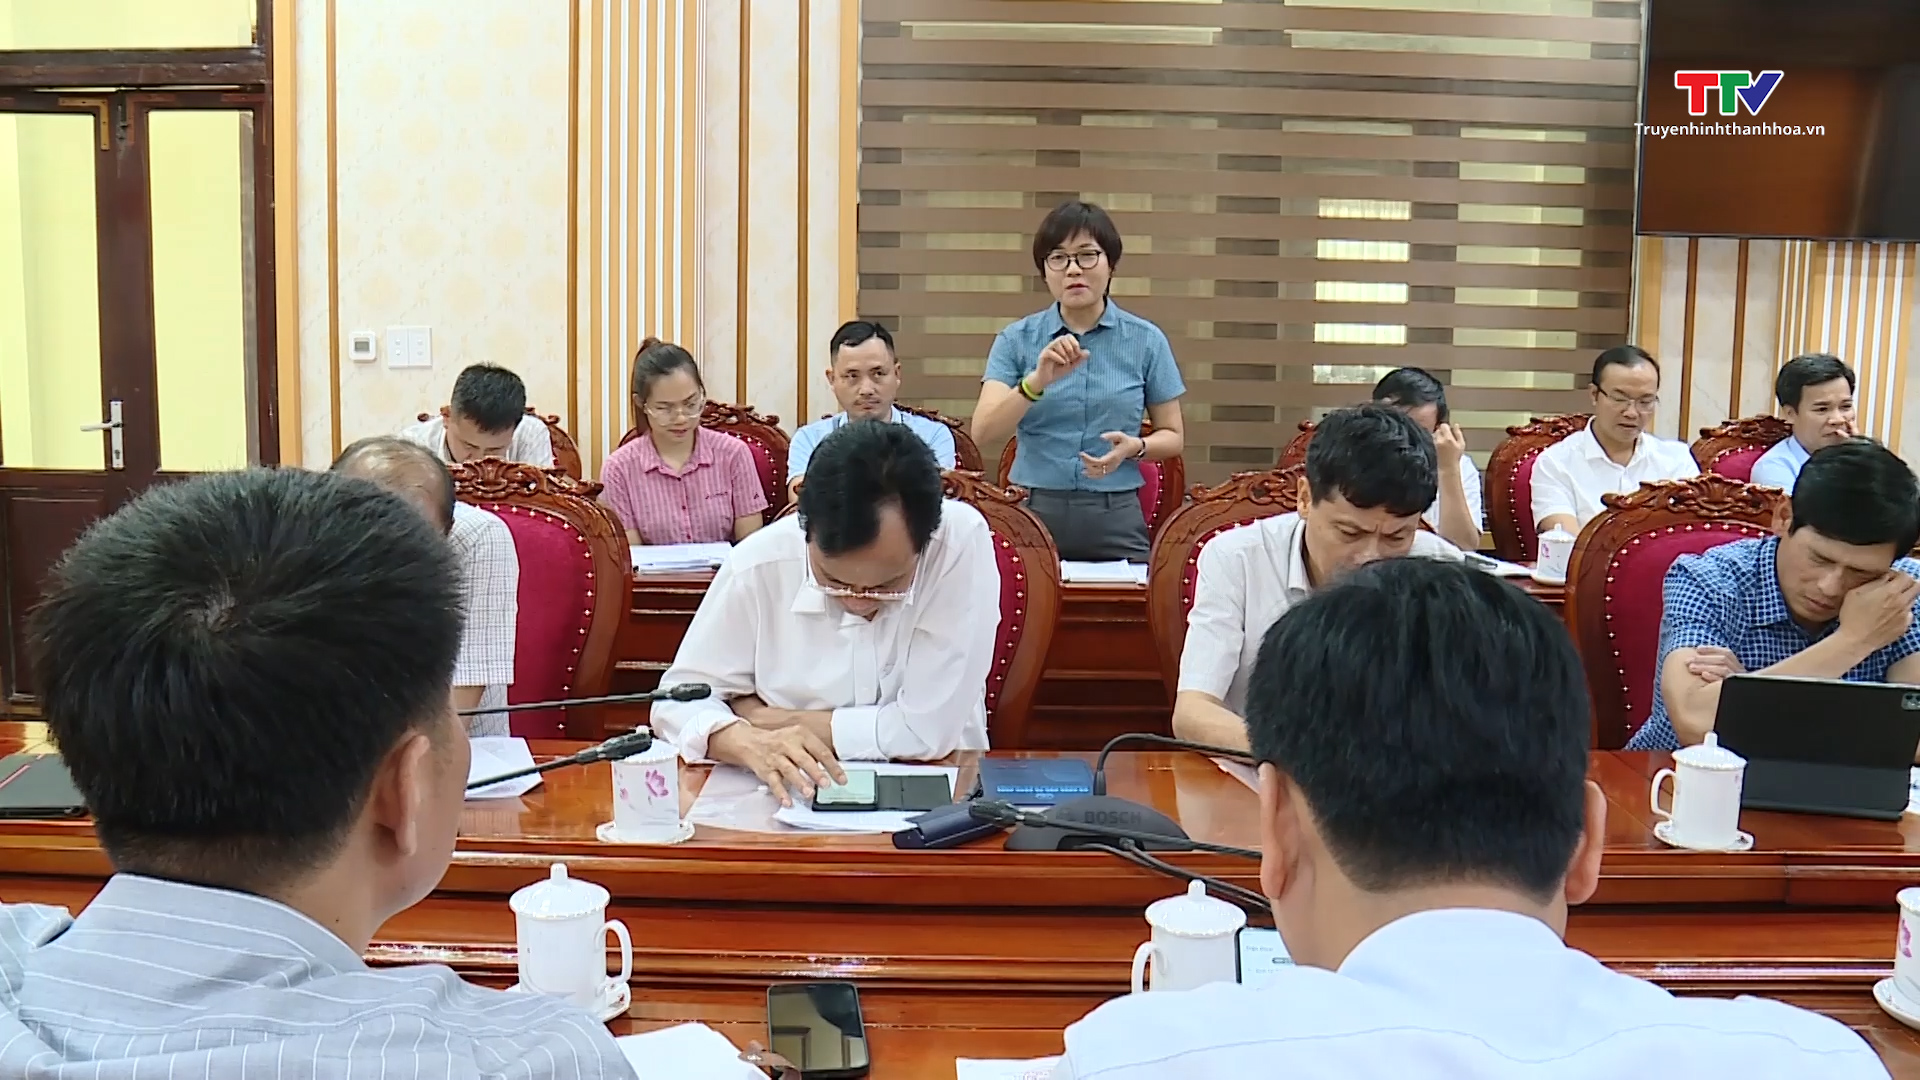 Phó Chủ tịch Thường trực Ủy ban nhân dân tỉnh Nguyễn Văn Thi kiểm tra các dự án tại Khu công nghiệp Bỉm Sơn - Ảnh 3.